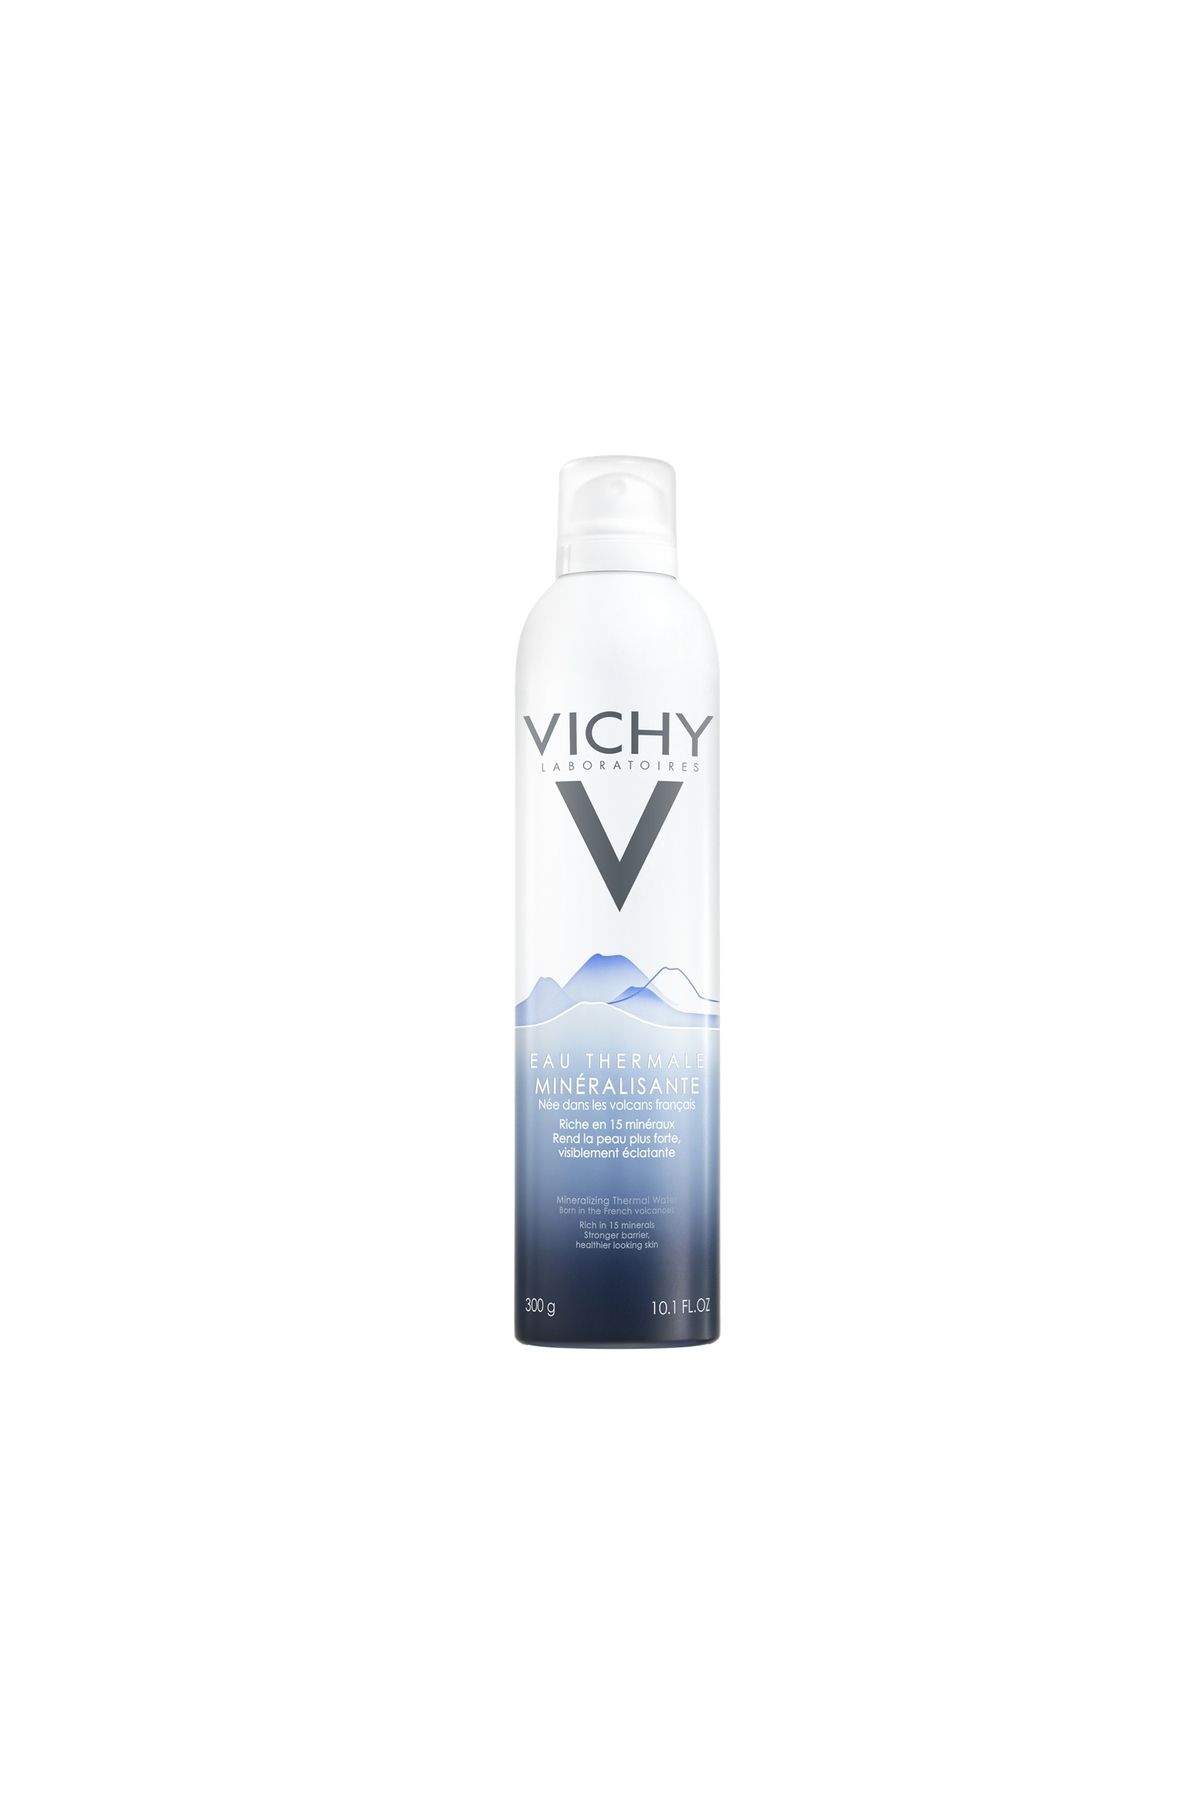 Vichy Hassas ciltleri rahatlatıcı, yatıştırıcı, koruyucu ve güçlendirici termal su / Eau Thermale 150ML